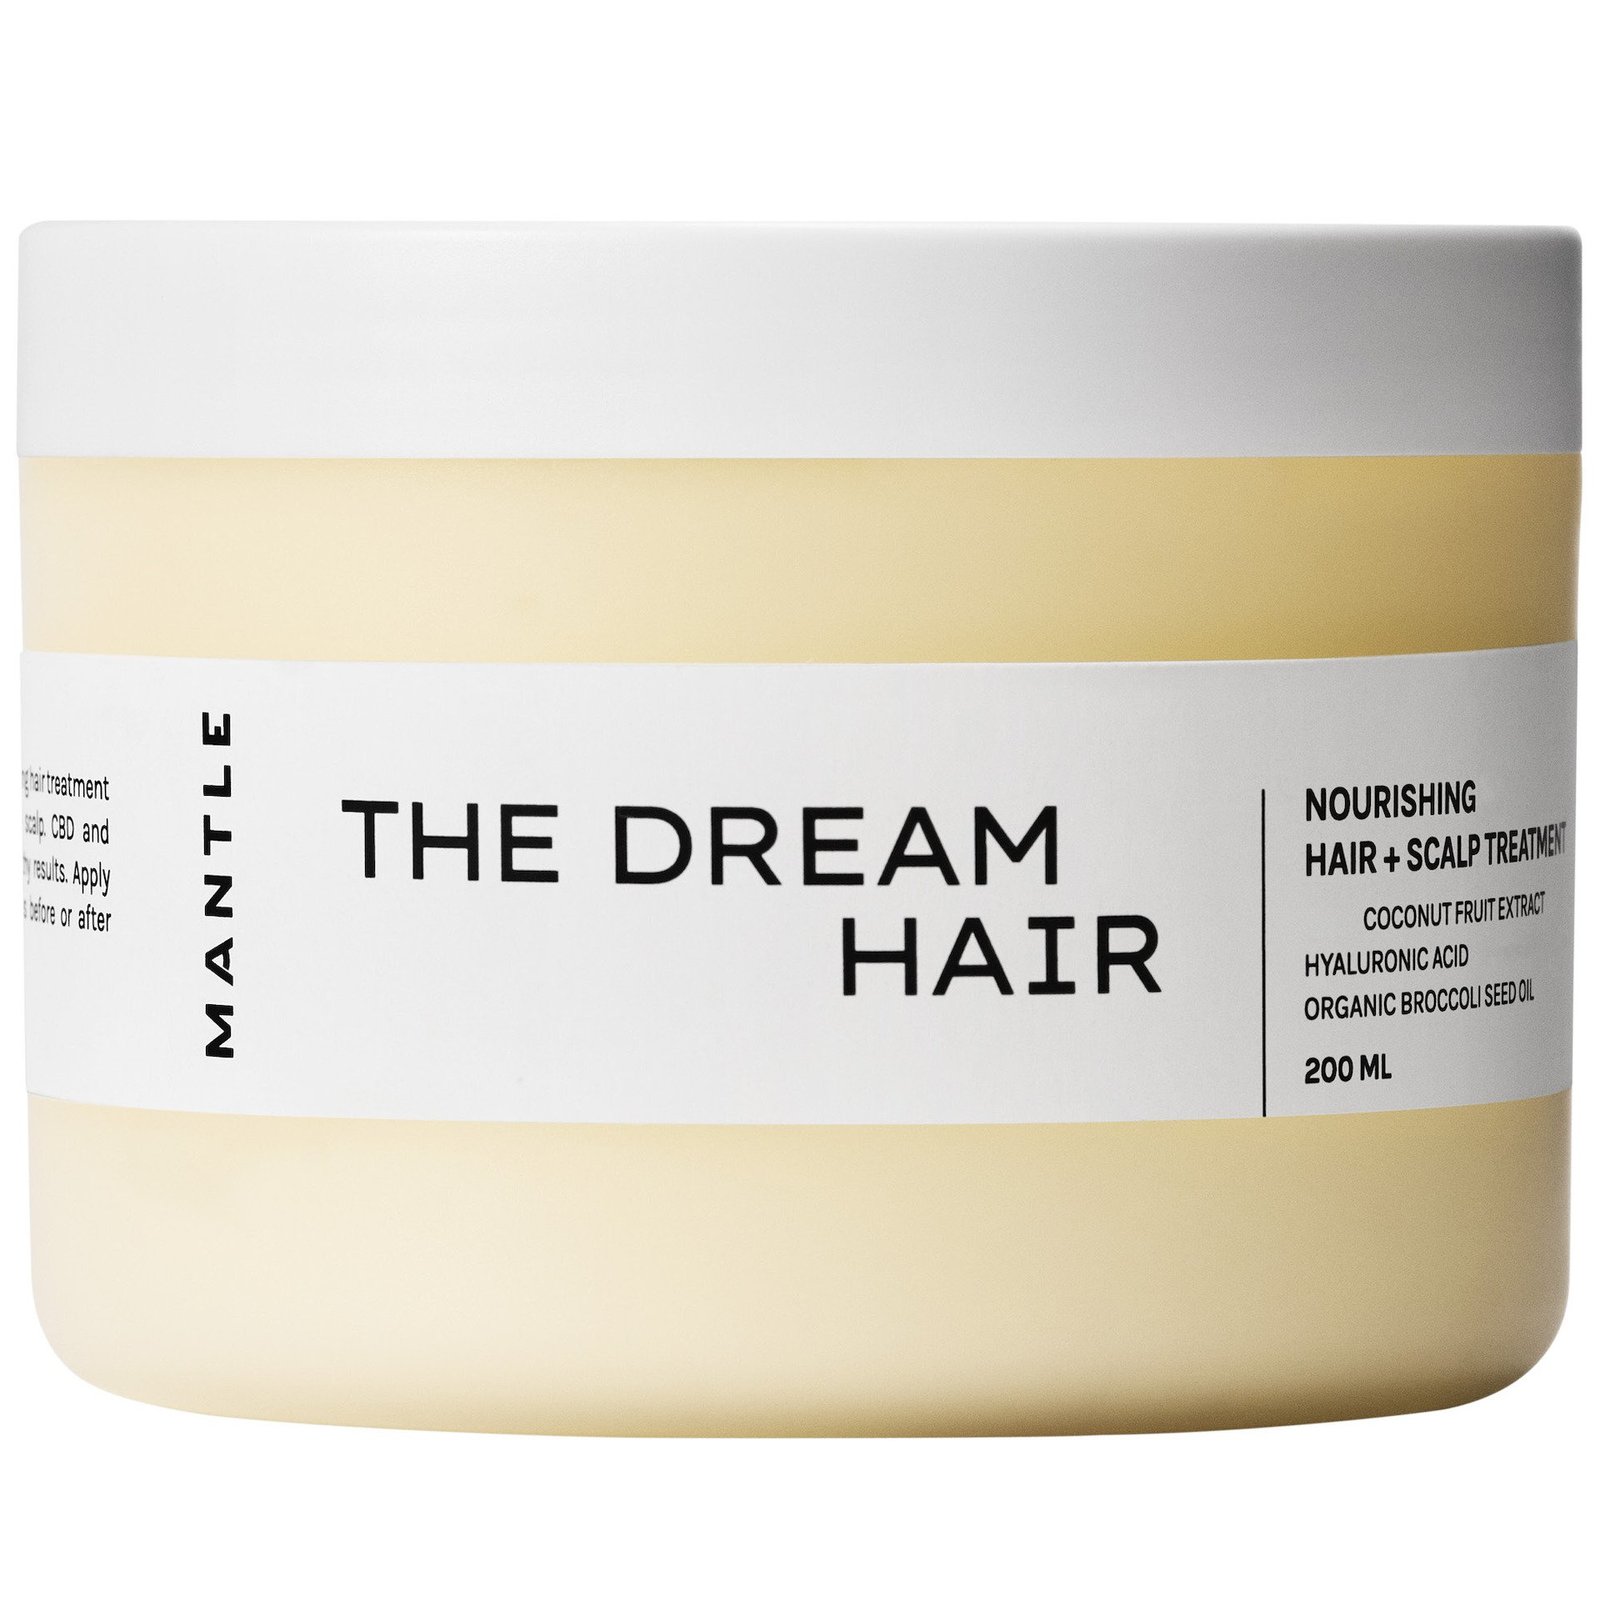 MANTLE The Dream Hair – Nourishing hair + scalp treatment 200ml